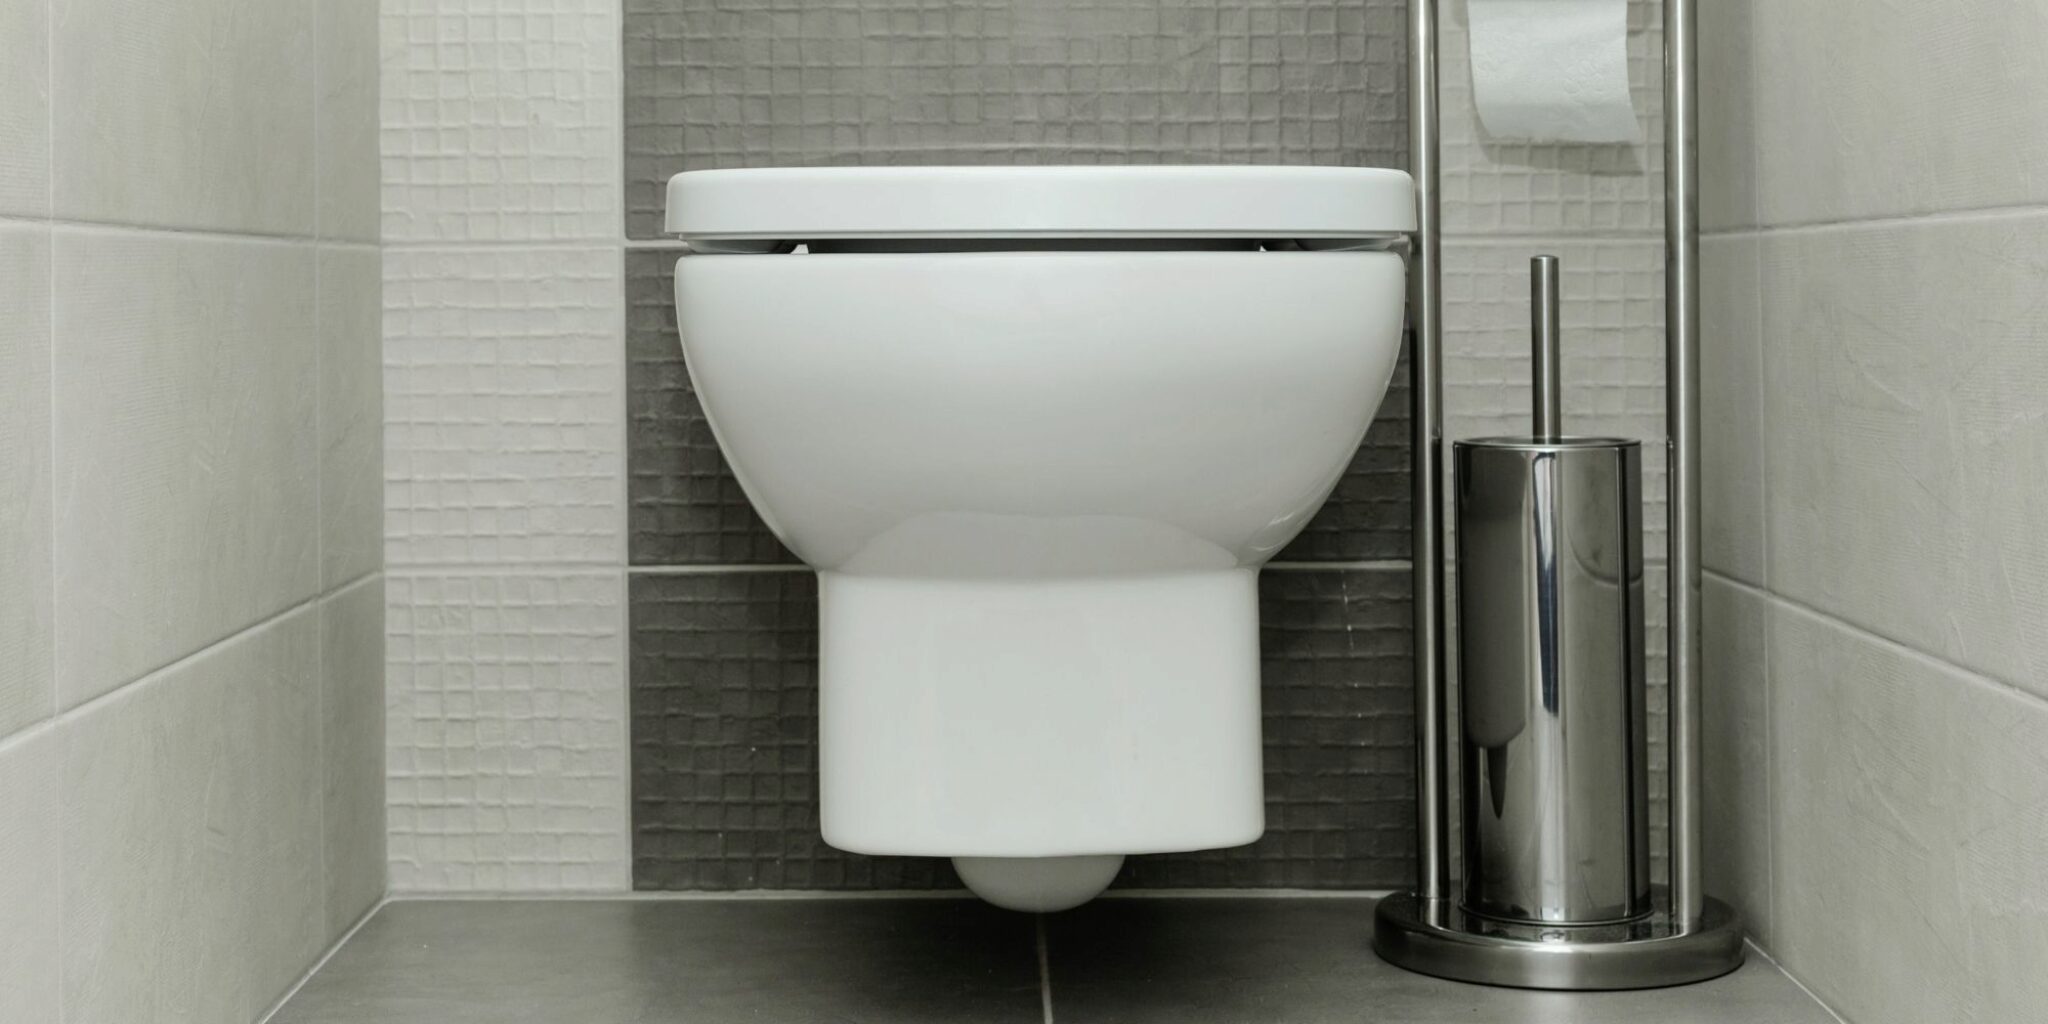 Comment Fonctionne Une Toilette a Faible Debit Decouvrez Pourquoi Vous Adorerez En Utiliser Un